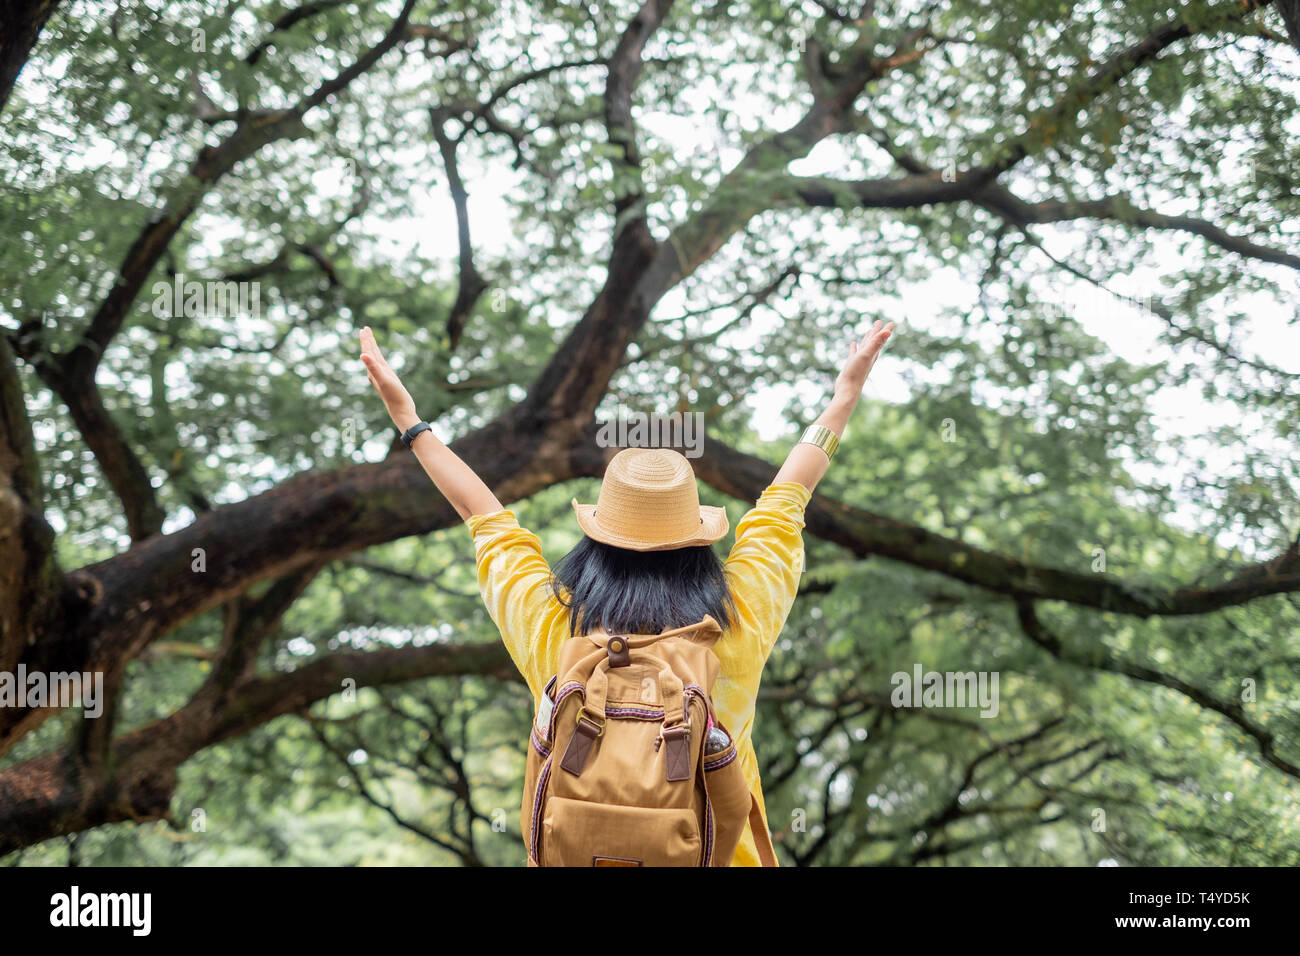 Asiatische reisende Frau backpacker Arm heben Blick auf ansehen und Moment im grünen Wald Jahreszeit genießen, Freiheit Wanderlust Travel. solo Rucksack Stockfoto